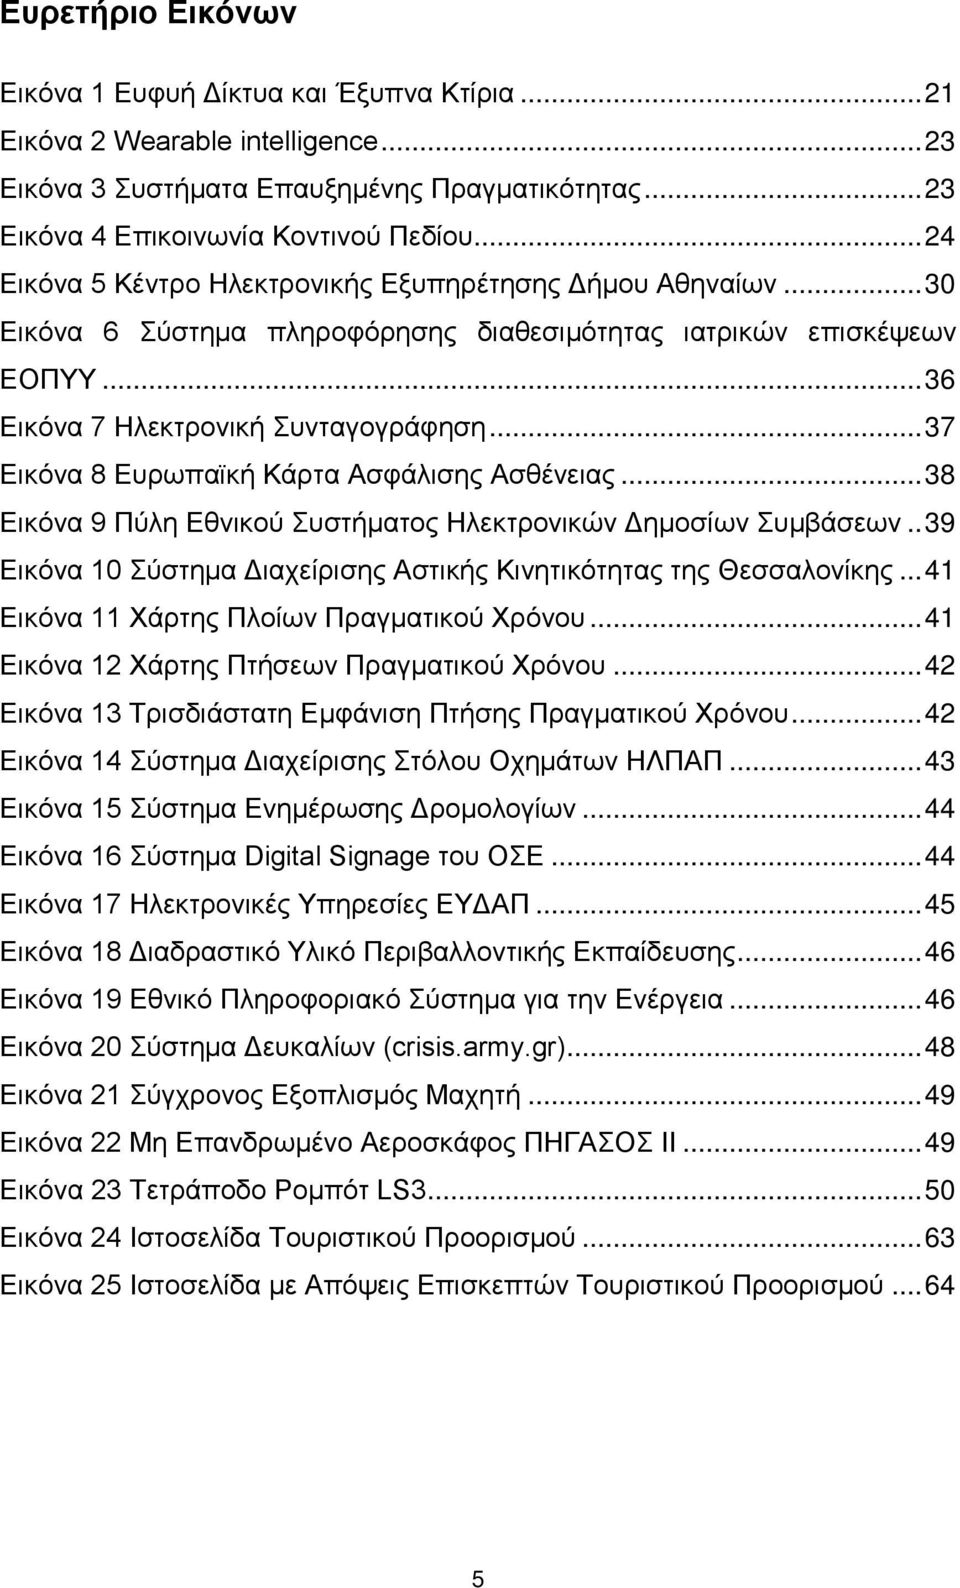 .. 37 Εικόνα 8 Ευρωπαϊκή Κάρτα Ασφάλισης Ασθένειας... 38 Εικόνα 9 Πύλη Εθνικού Συστήματος Ηλεκτρονικών Δημοσίων Συμβάσεων.. 39 Εικόνα 10 Σύστημα Διαχείρισης Αστικής Κινητικότητας της Θεσσαλονίκης.